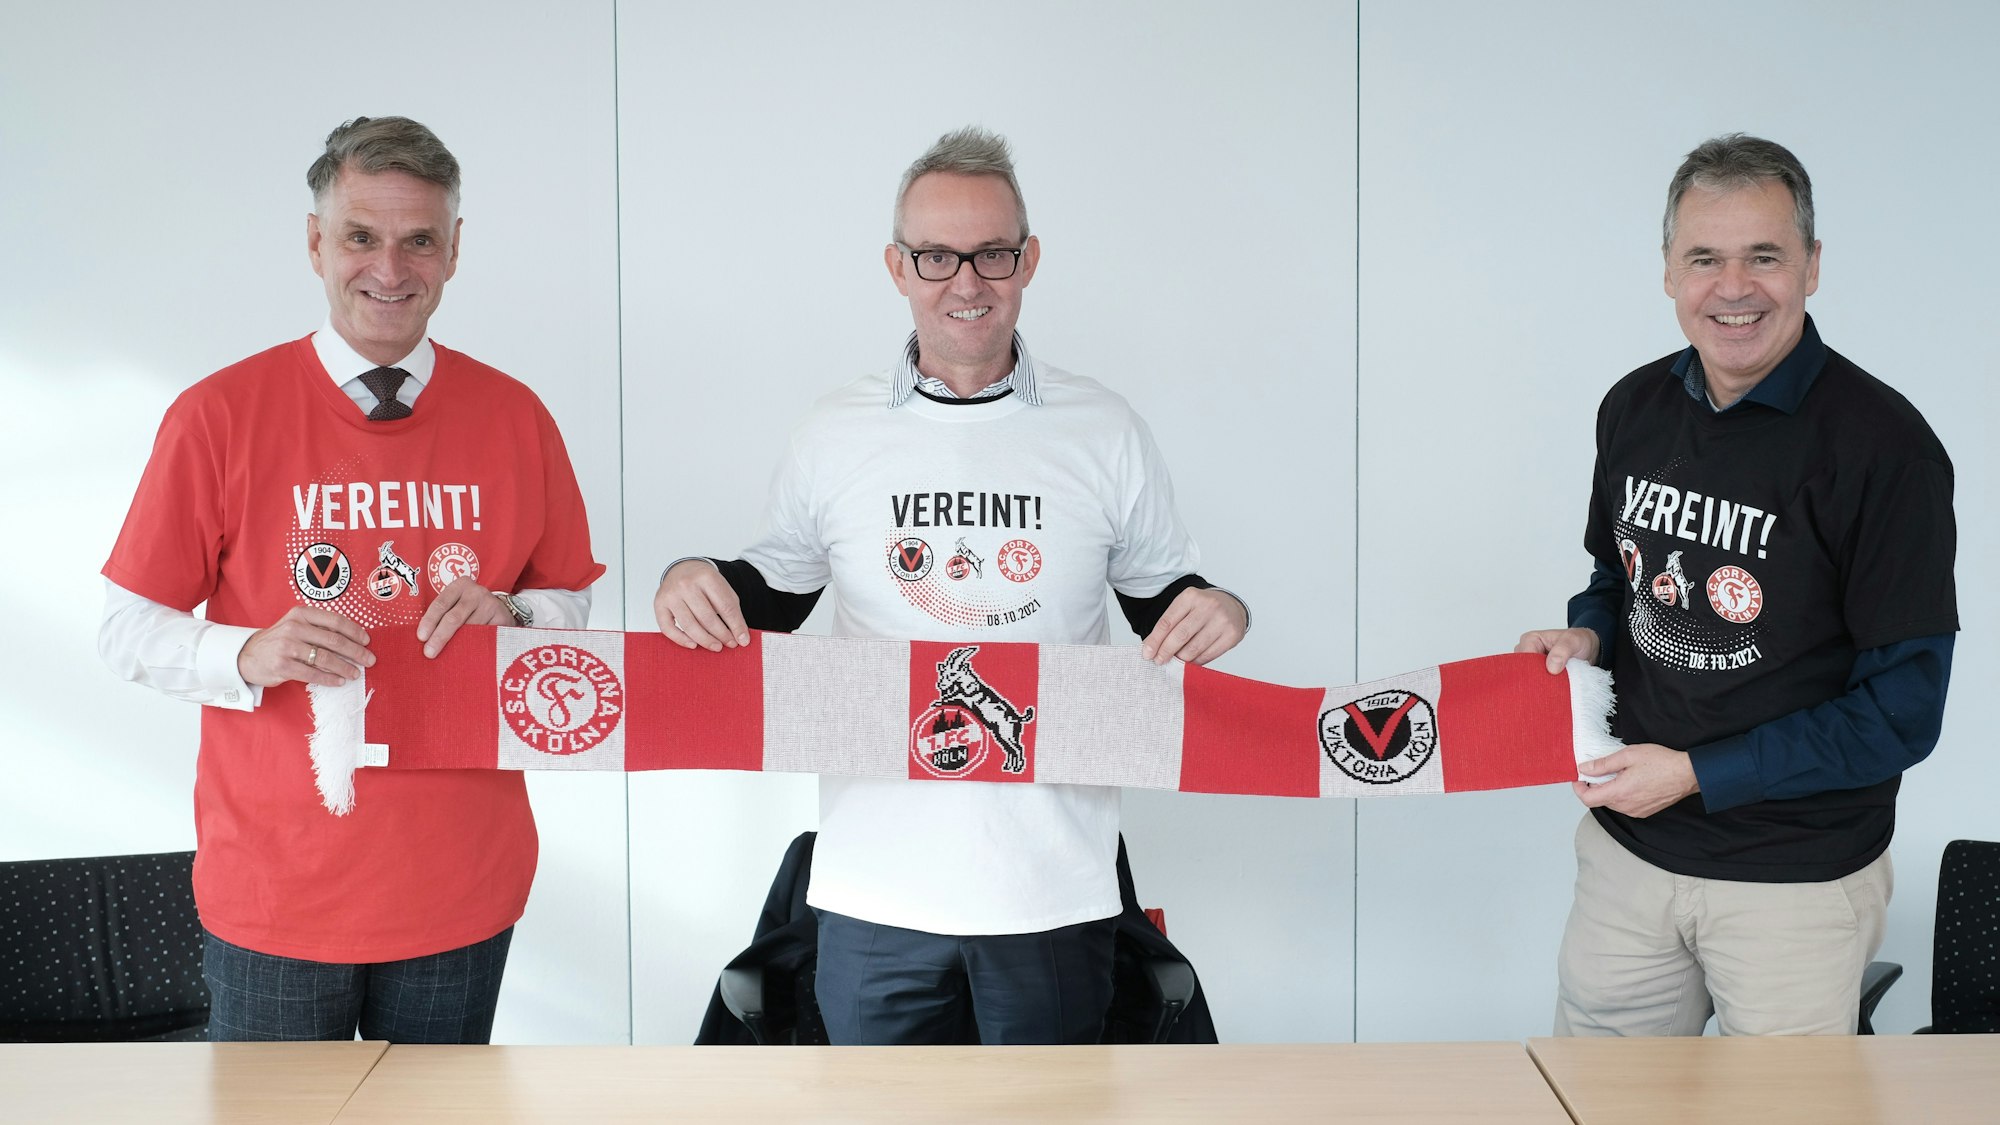 Andreas Rettig, Alexander Wehrle und Hanns-Jörg Westendorf (v.r.) demonstrieren gemeinsam mit dem „Mottoschal“ und T-Shirt Einigkeit.